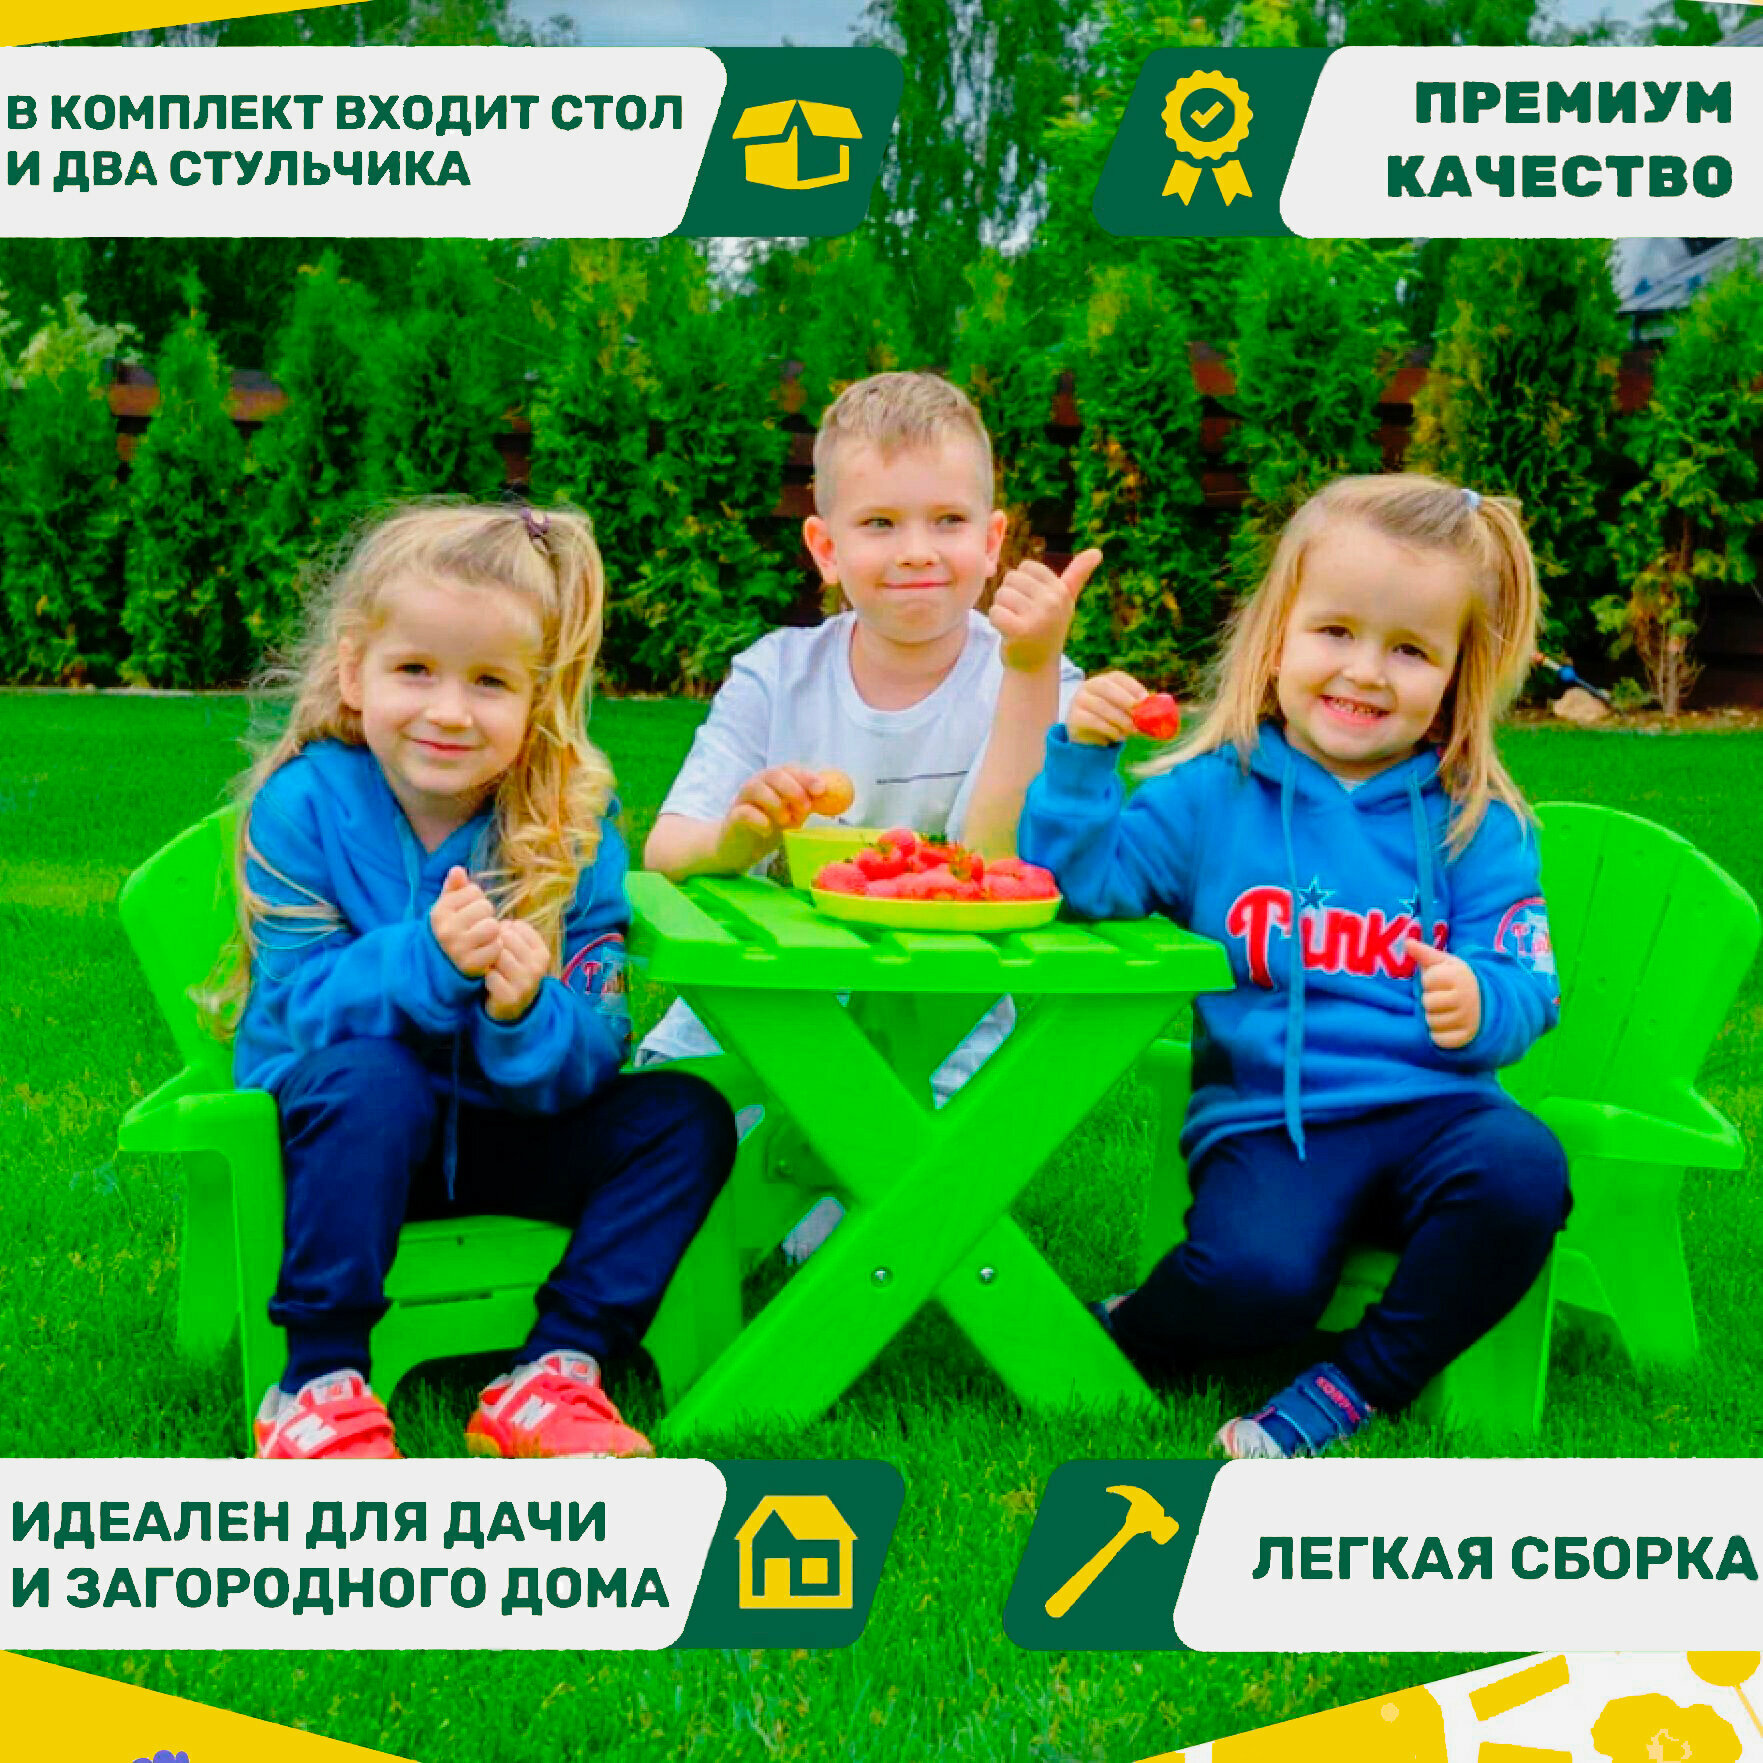 Набор садовой мебели детский UNIX Kids Garden Green _ стол и 2 стула из пластика _ для улицы и дачи _ зеленый